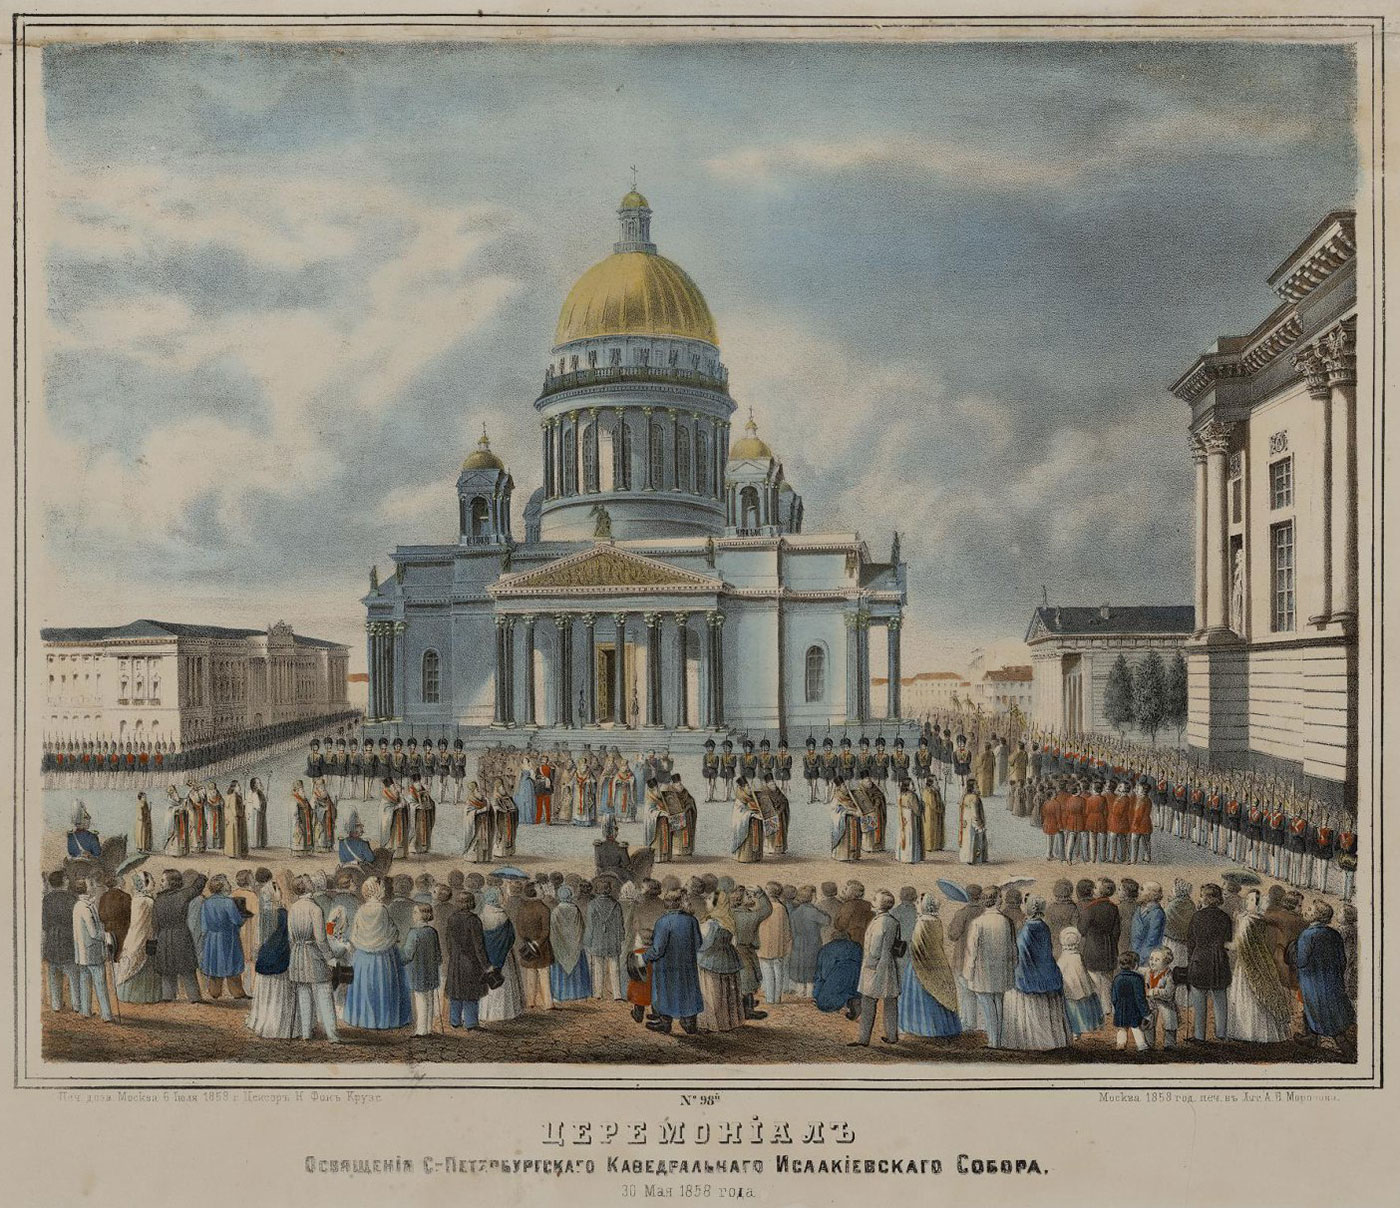 Вид на Исаакиевский собор со стороны Сенатской площади во время церемонии освящения 1858 г., неизвестный литограф